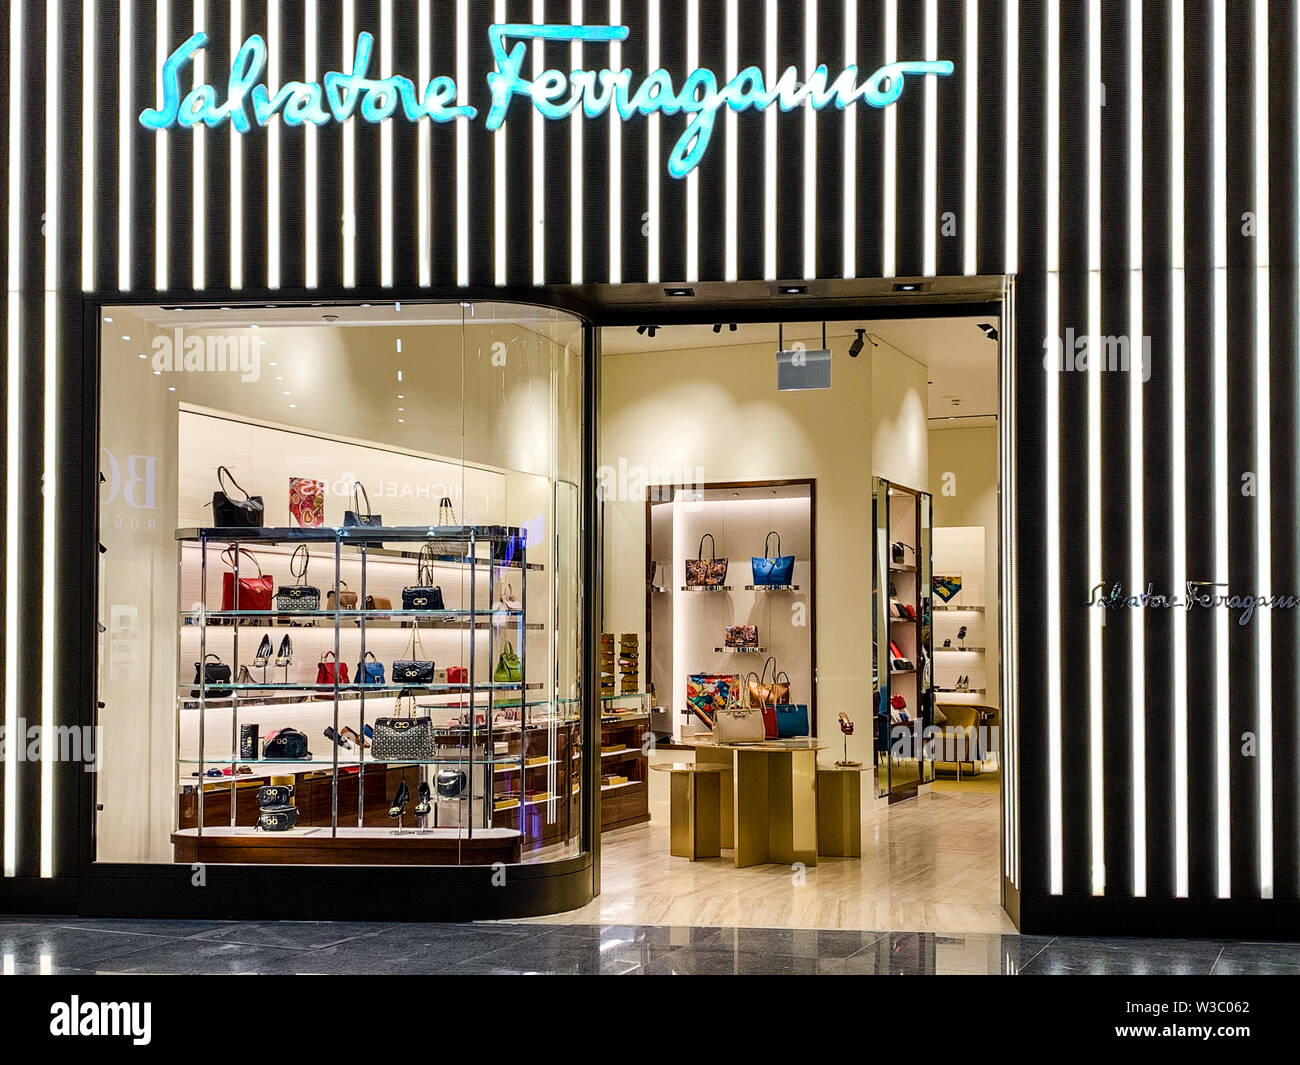 L'Italien Salvatore Ferragamo shop, avant la vente d'articles de luxe. C'est un italien célèbre détaillant haut de gamme, en particulier pour les chaussures. Istanbul/Turquie - Ap Banque D'Images